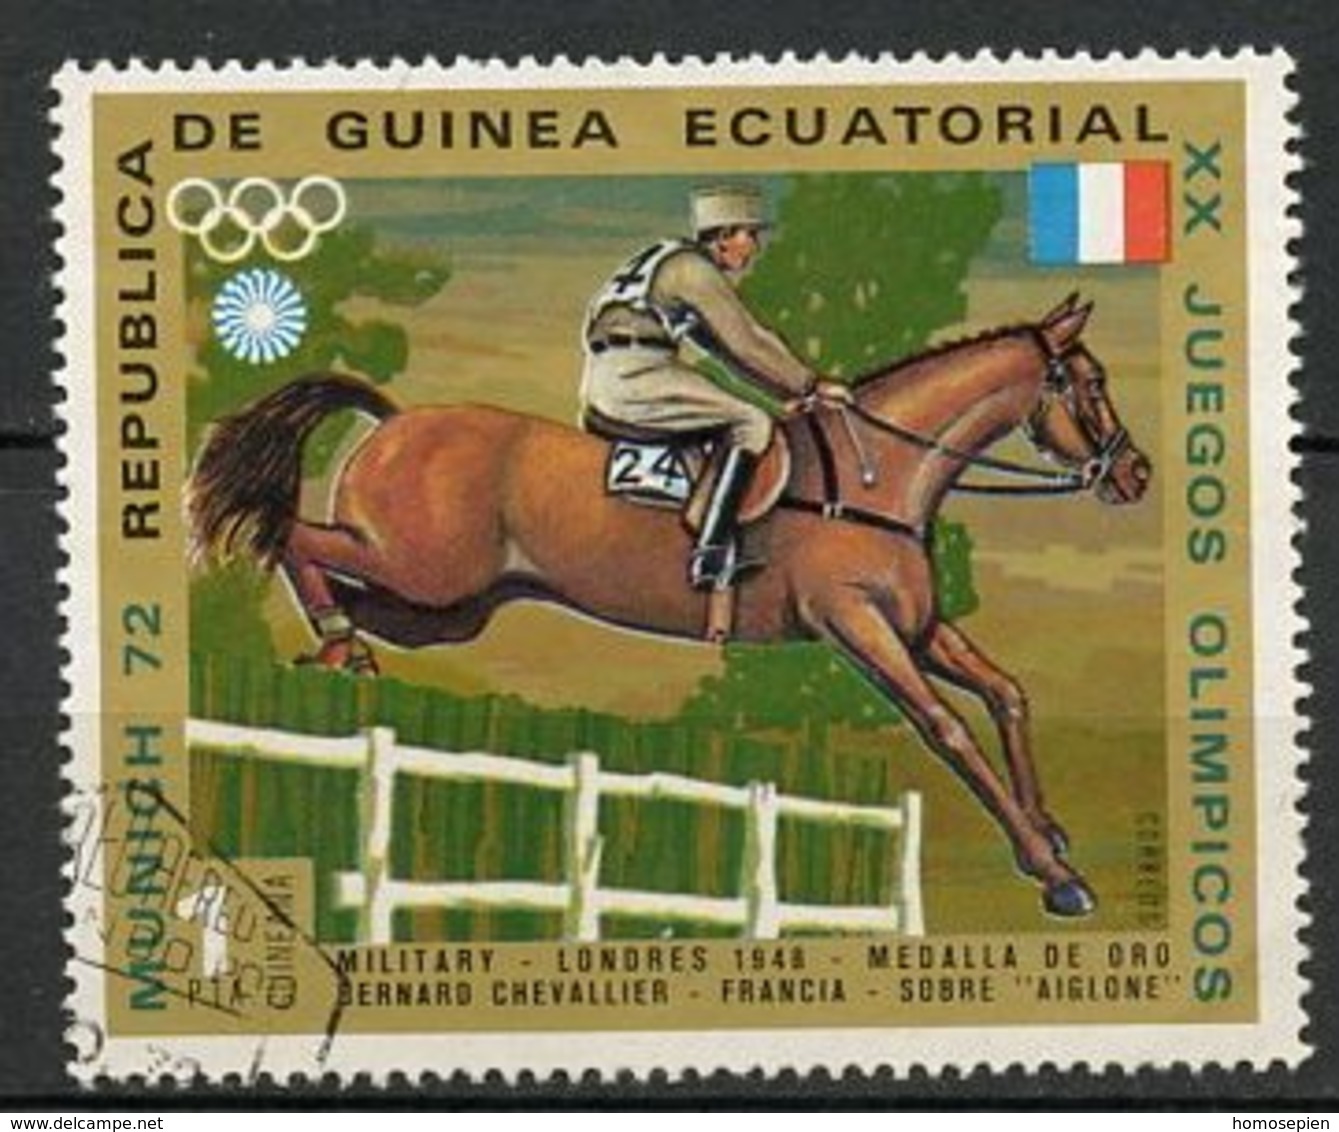 Guinée équatoriale - Guinea 1972 Y&T N°25-1p - Michel N°126 (o) - 1p B Chevallier - Guinée Equatoriale